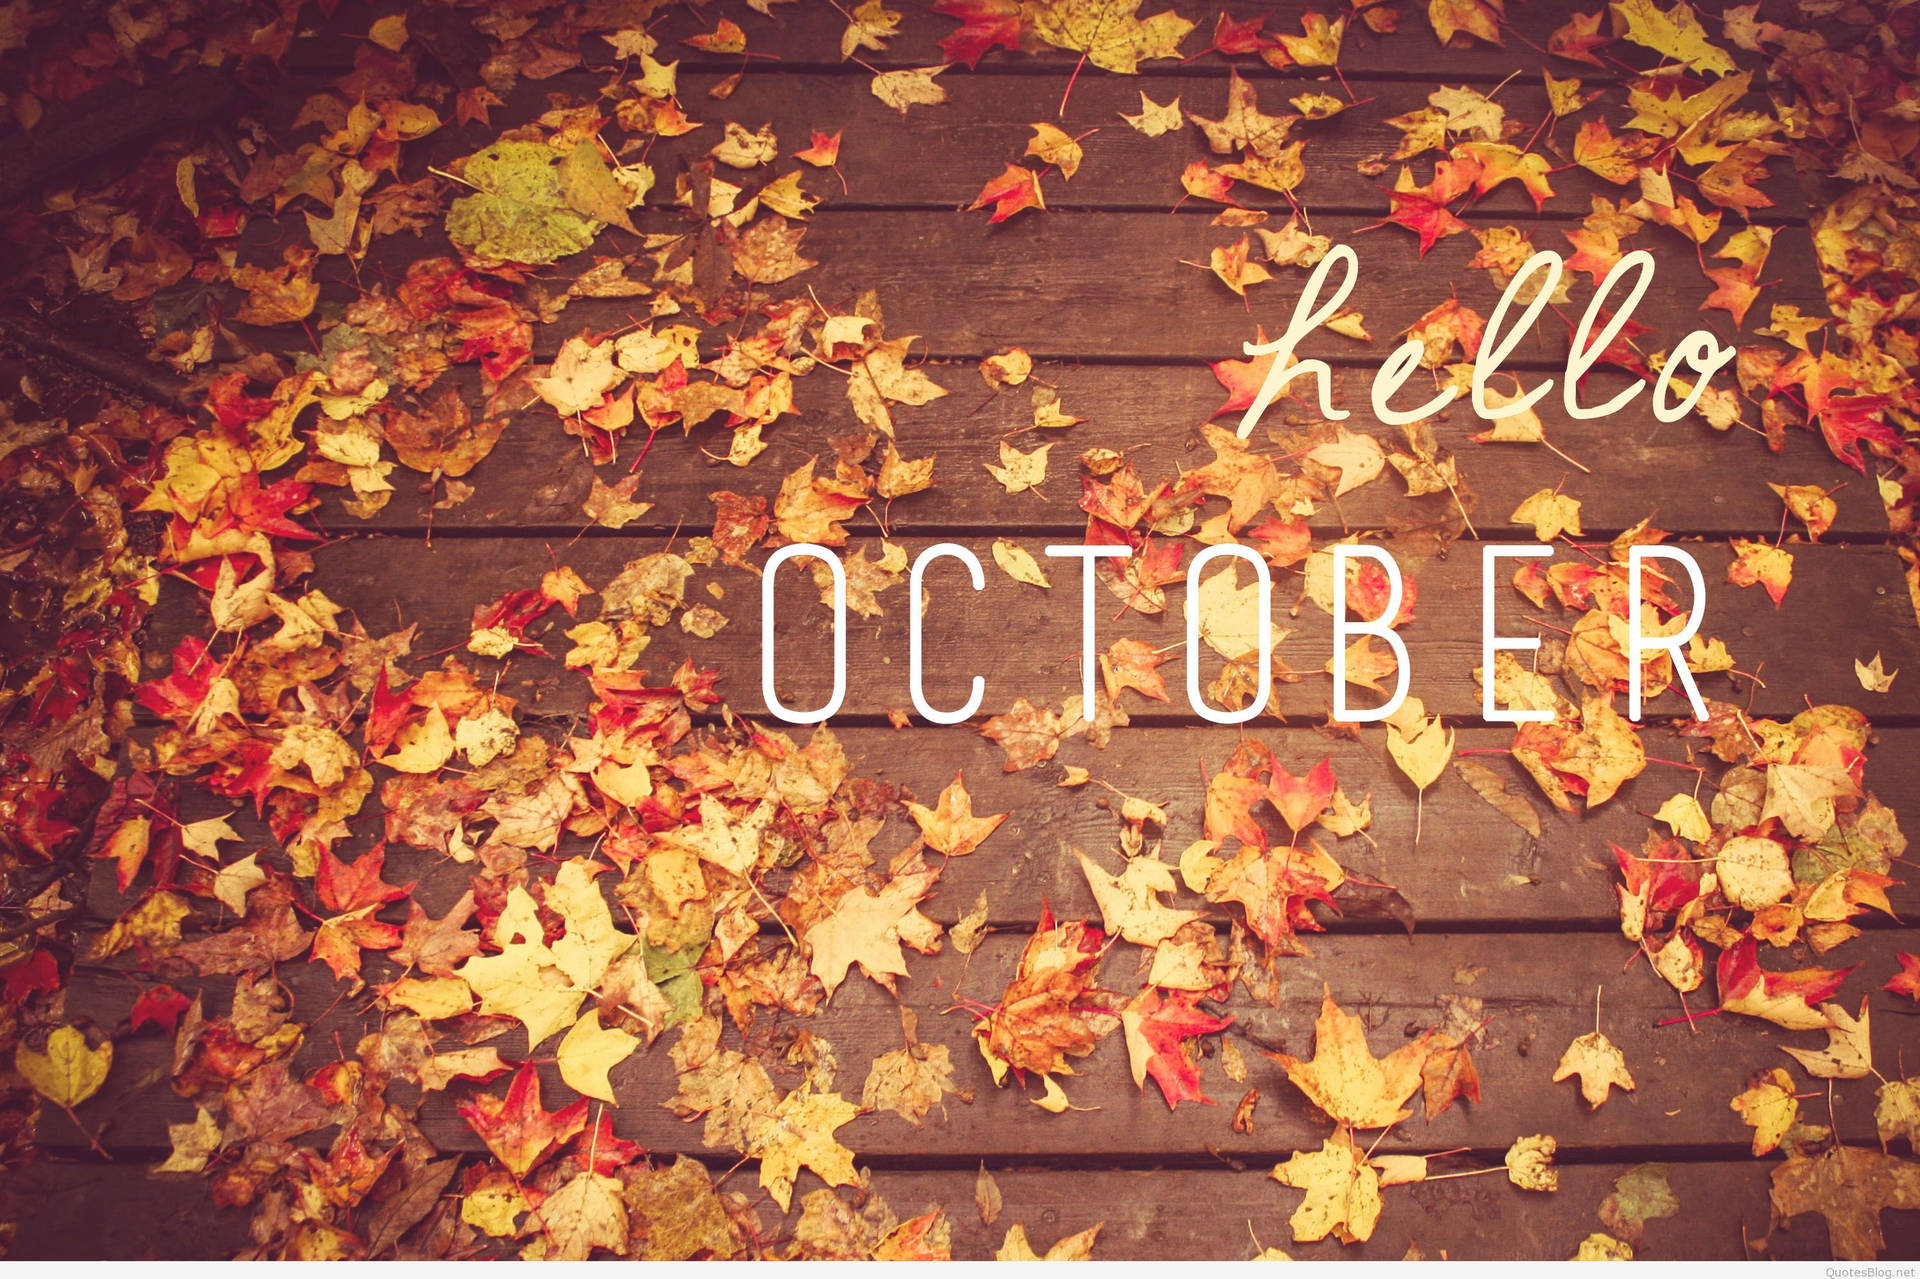 !Spred kærligheden denne oktober! Wallpaper